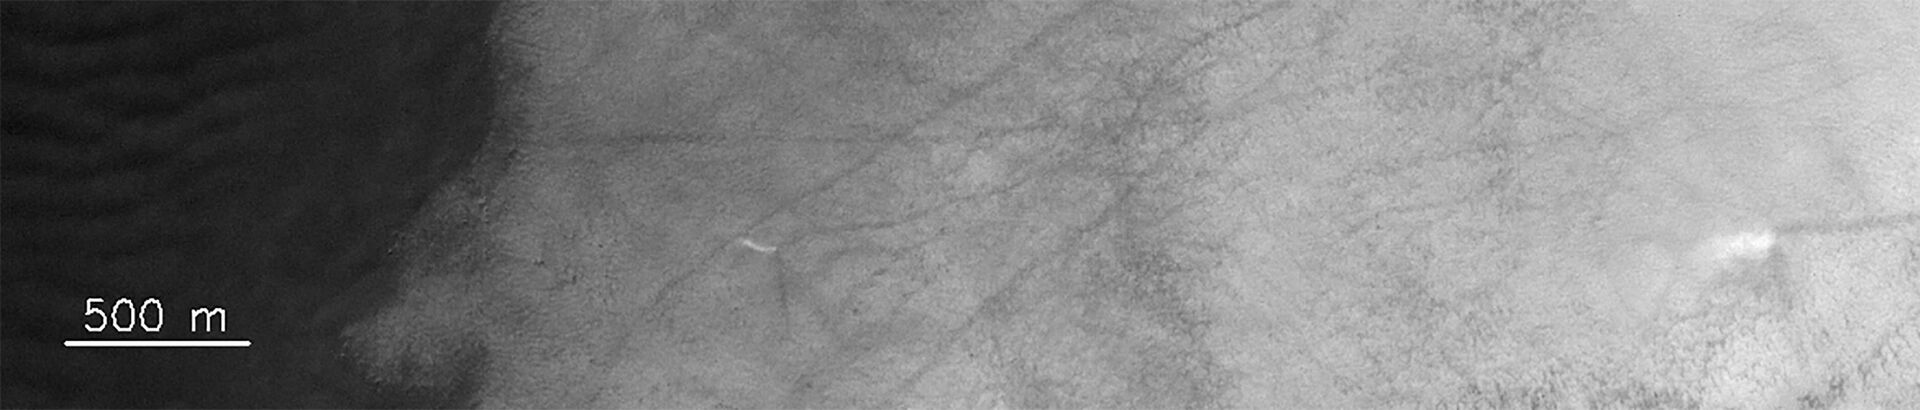 FOTO registra tornados gigantes a partir da órbita de Marte - Sputnik Brasil, 1920, 28.02.2021